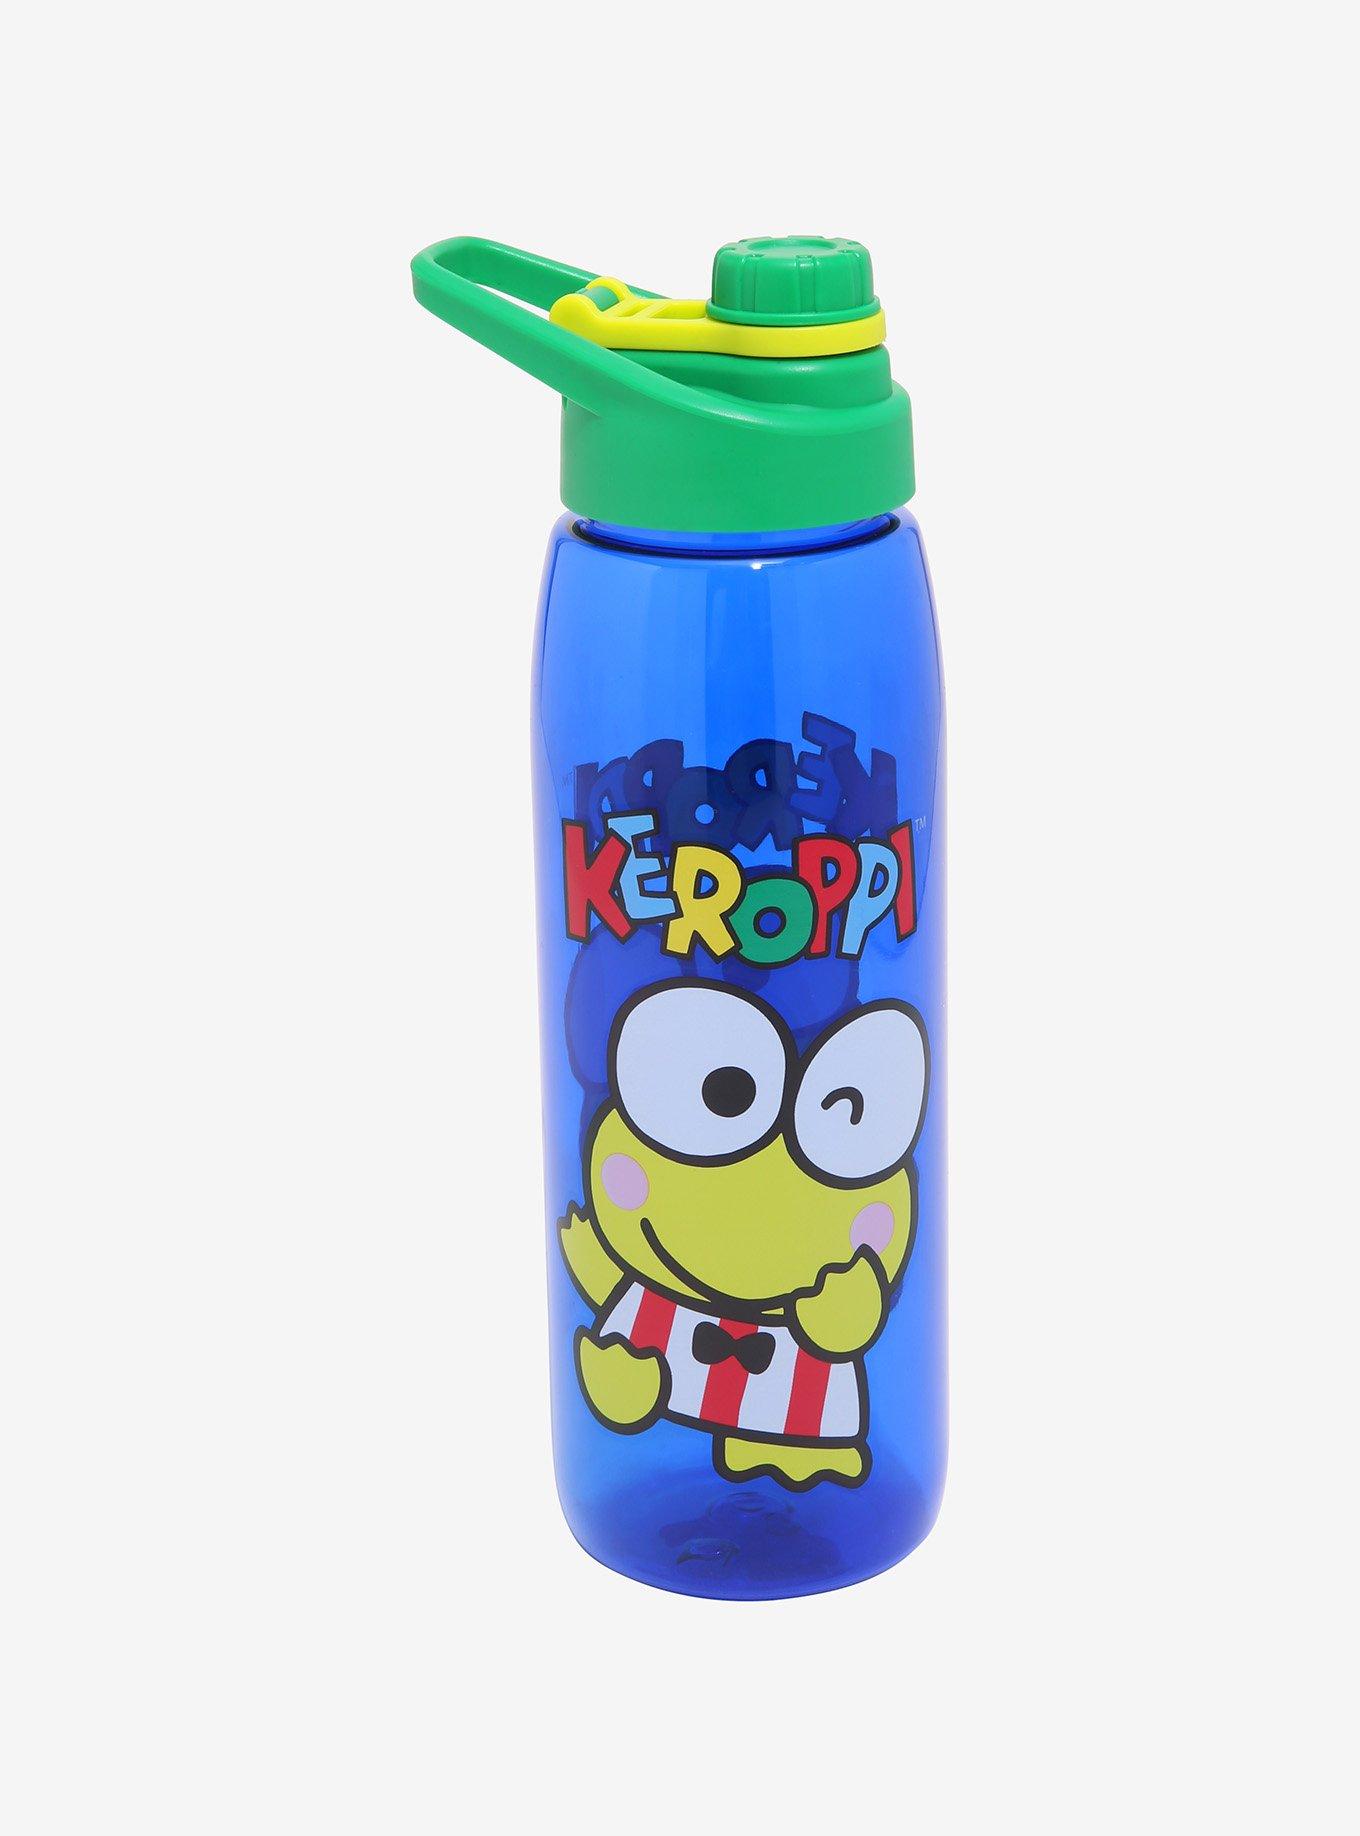 Elmo - Children's Tumbler, Kid's Water Bottle, Water Bottle, Toddler